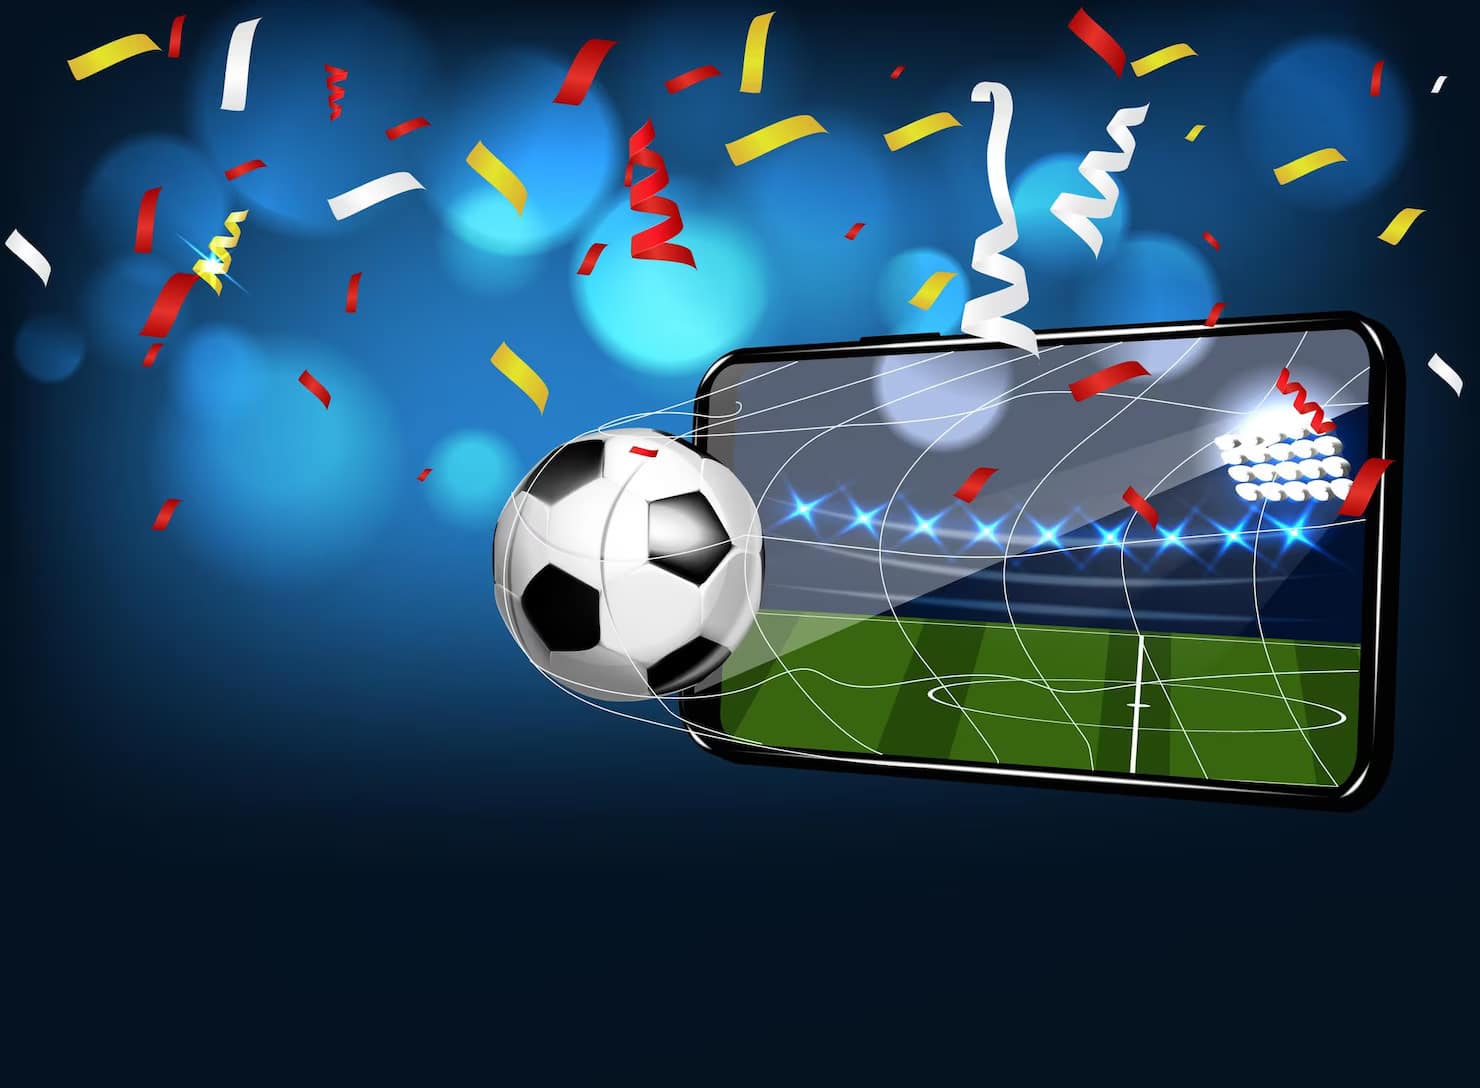 Aplikace pro sledování fotbalu zdarma: Top 5!